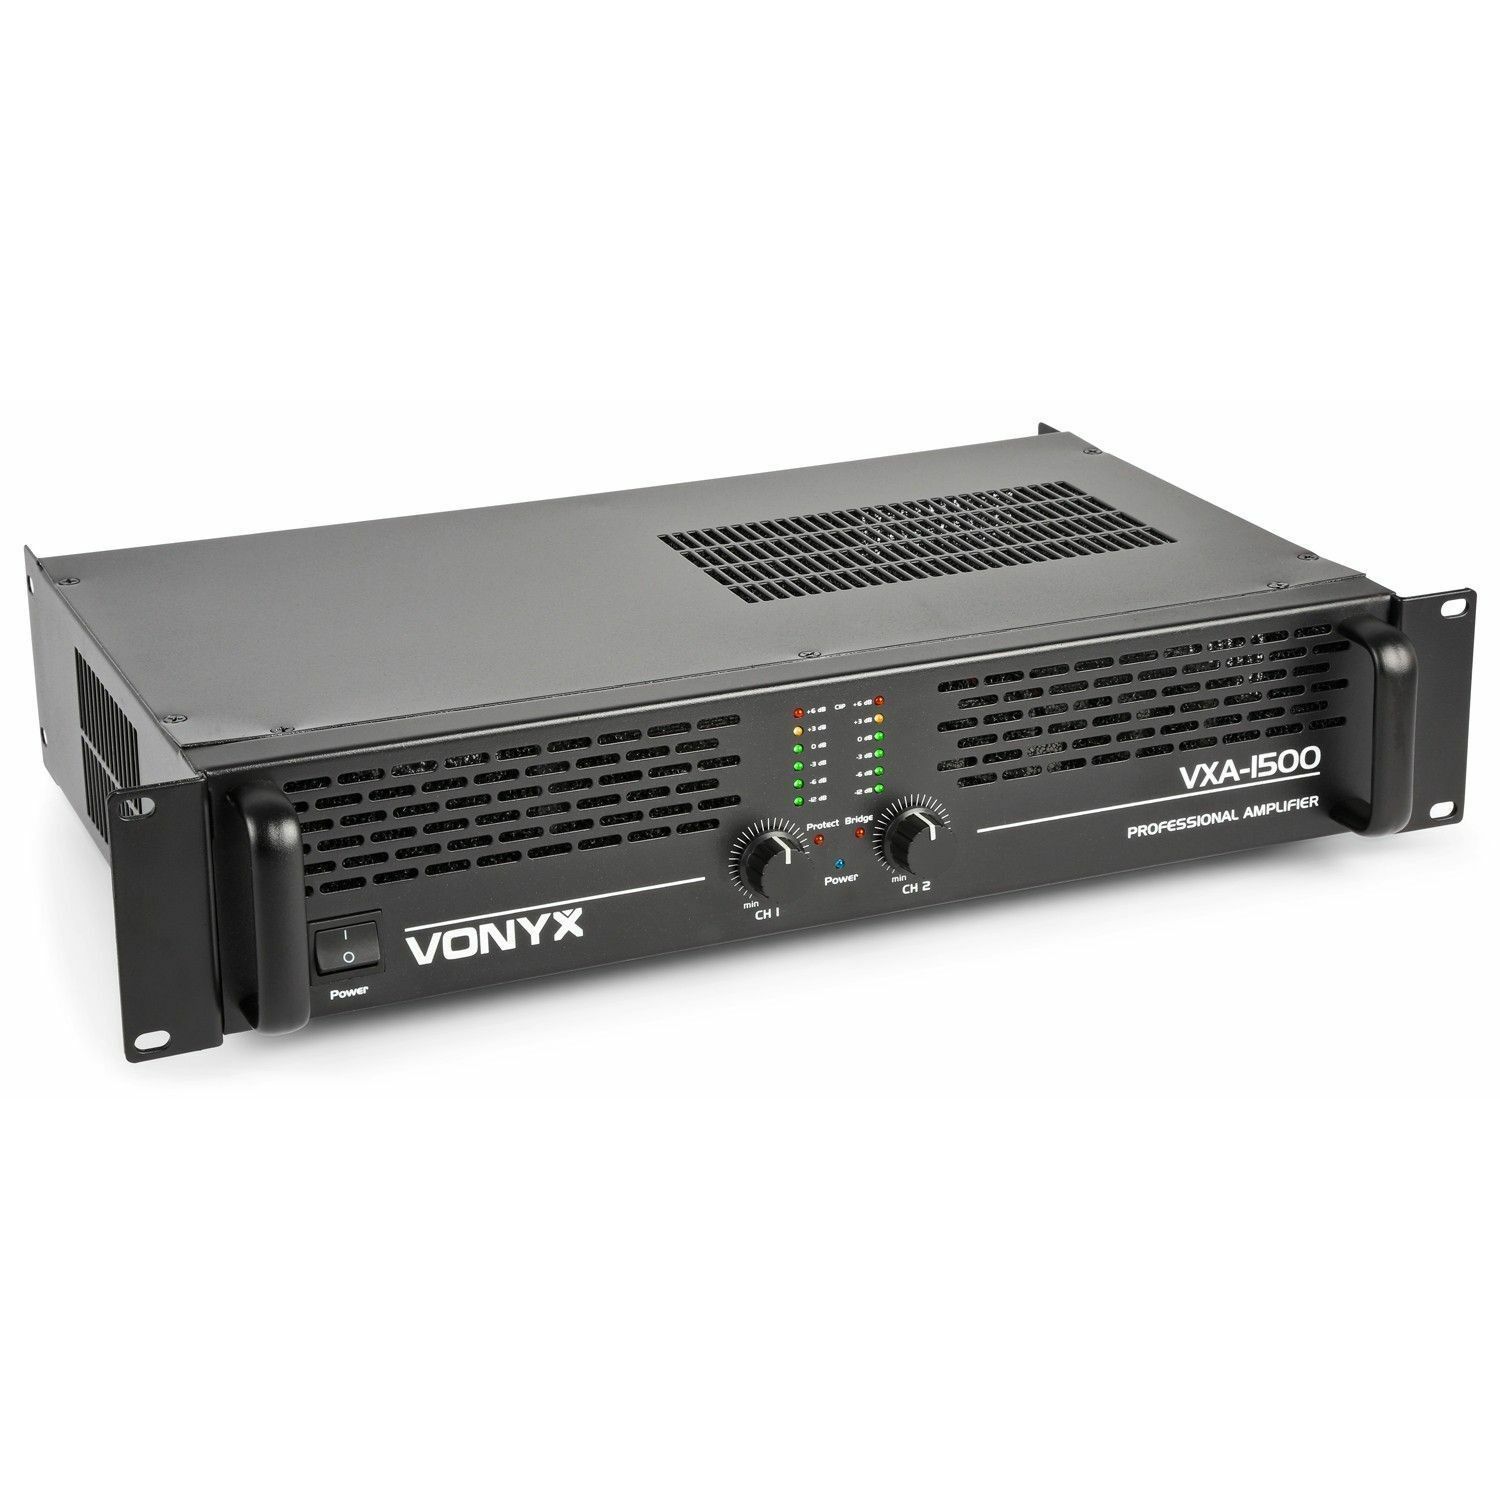 Retourdeal - Vonyx VXA-1500 PA versterker 2x 750W met Brugschakeling